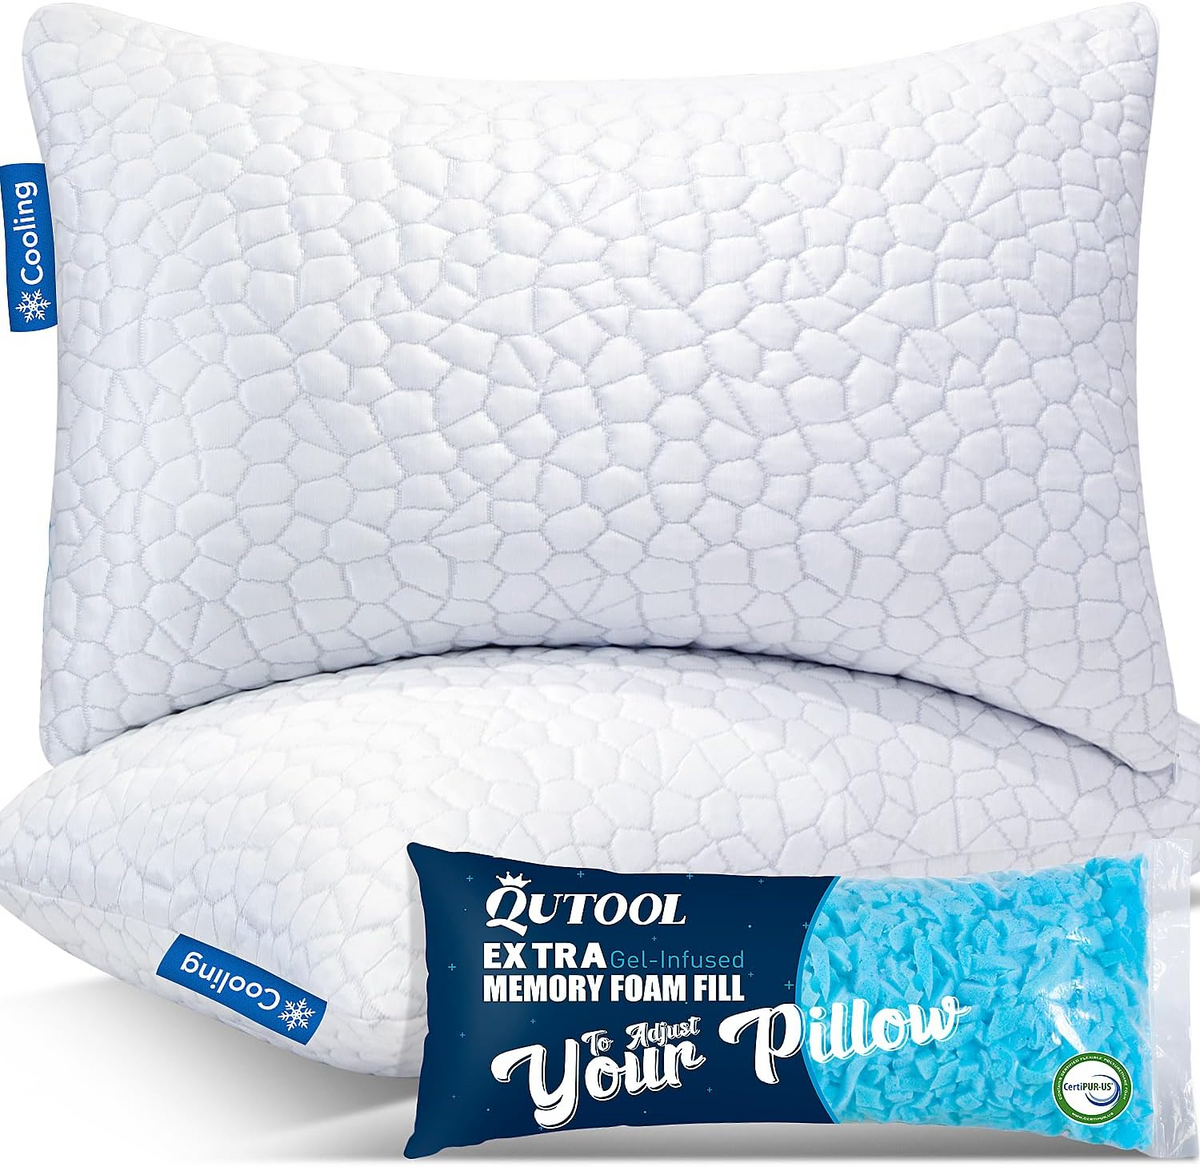 Cooling Lumbar Pillow for Sleeping